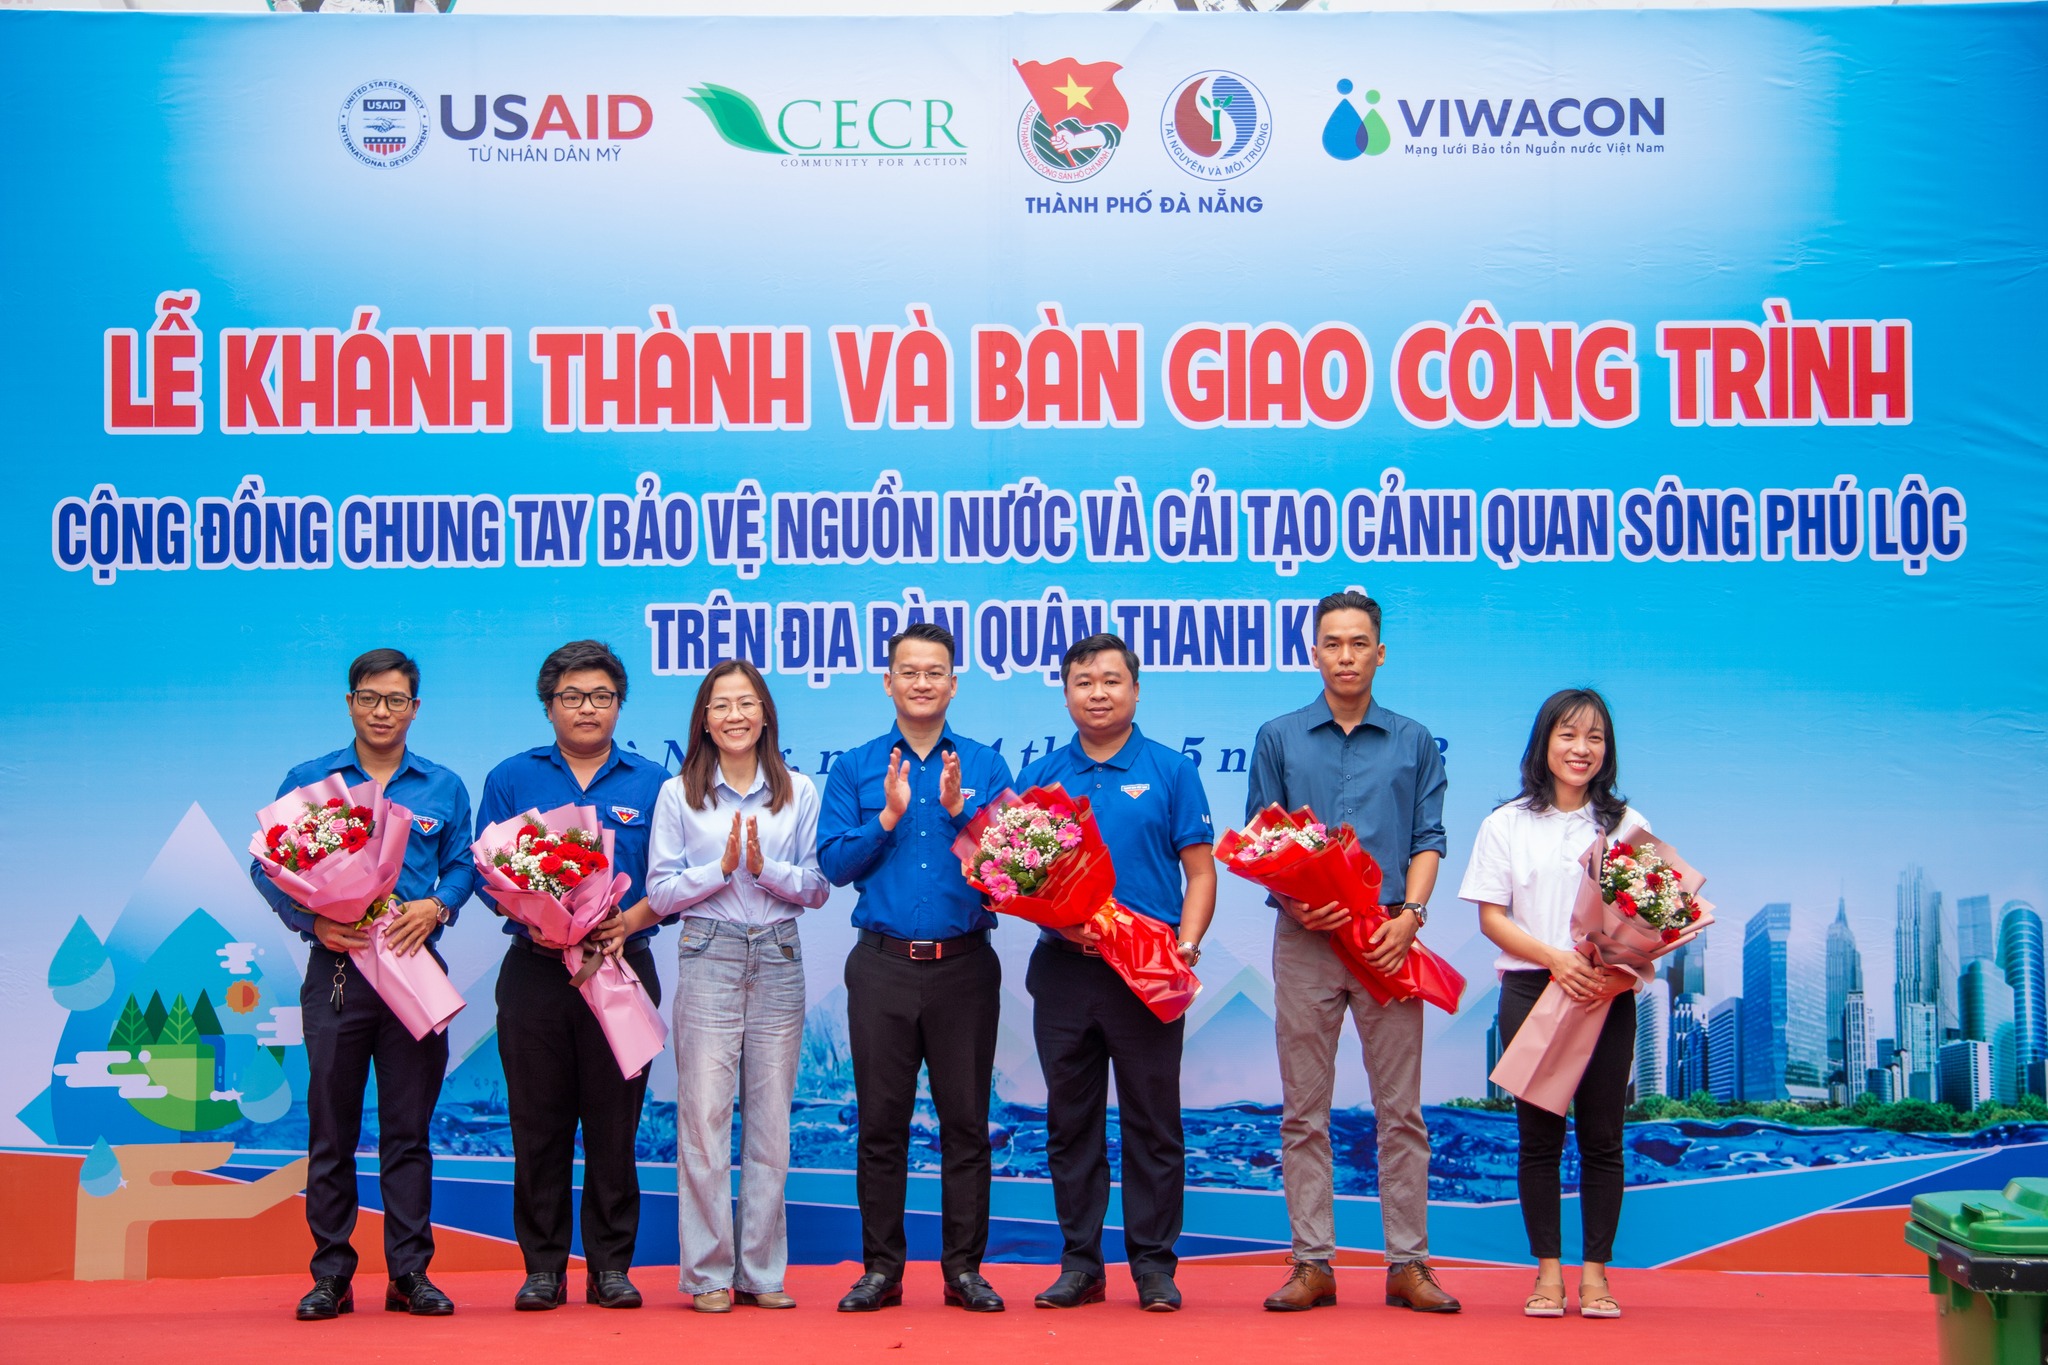 Lễ khánh thành và bàn giao công trình thanh niên "Cộng đồng chung tay bảo vệ nguồn nước và cải tạo cảnh quan sông Phú Lộc trên địa bàn quận Thanh Khê" 